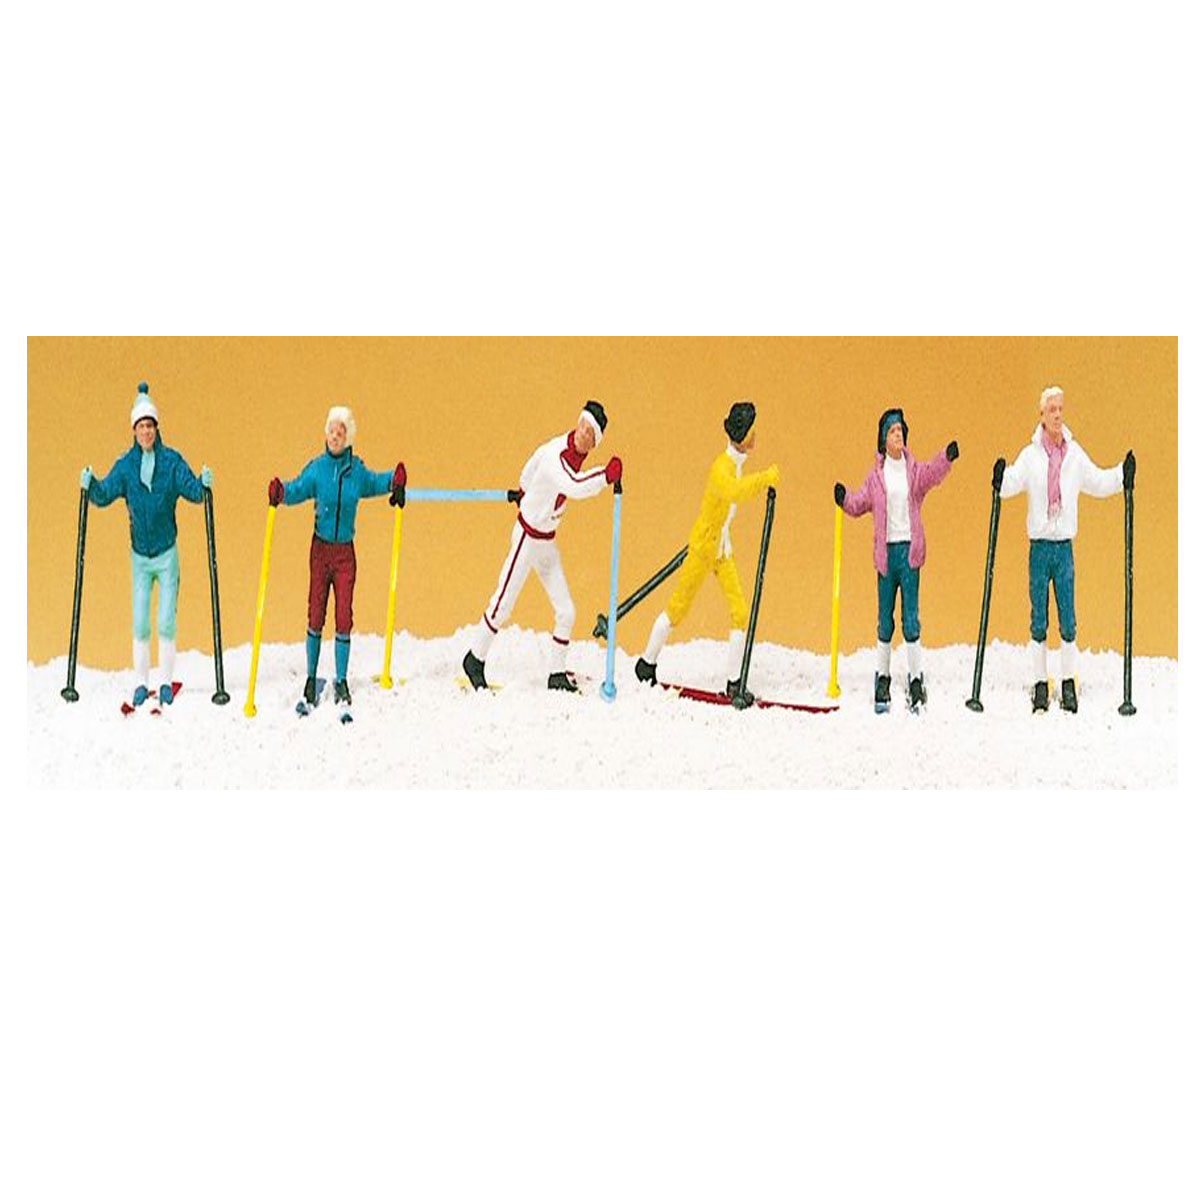 Modélisme HO : Figurines - Skieurs de ski de fond